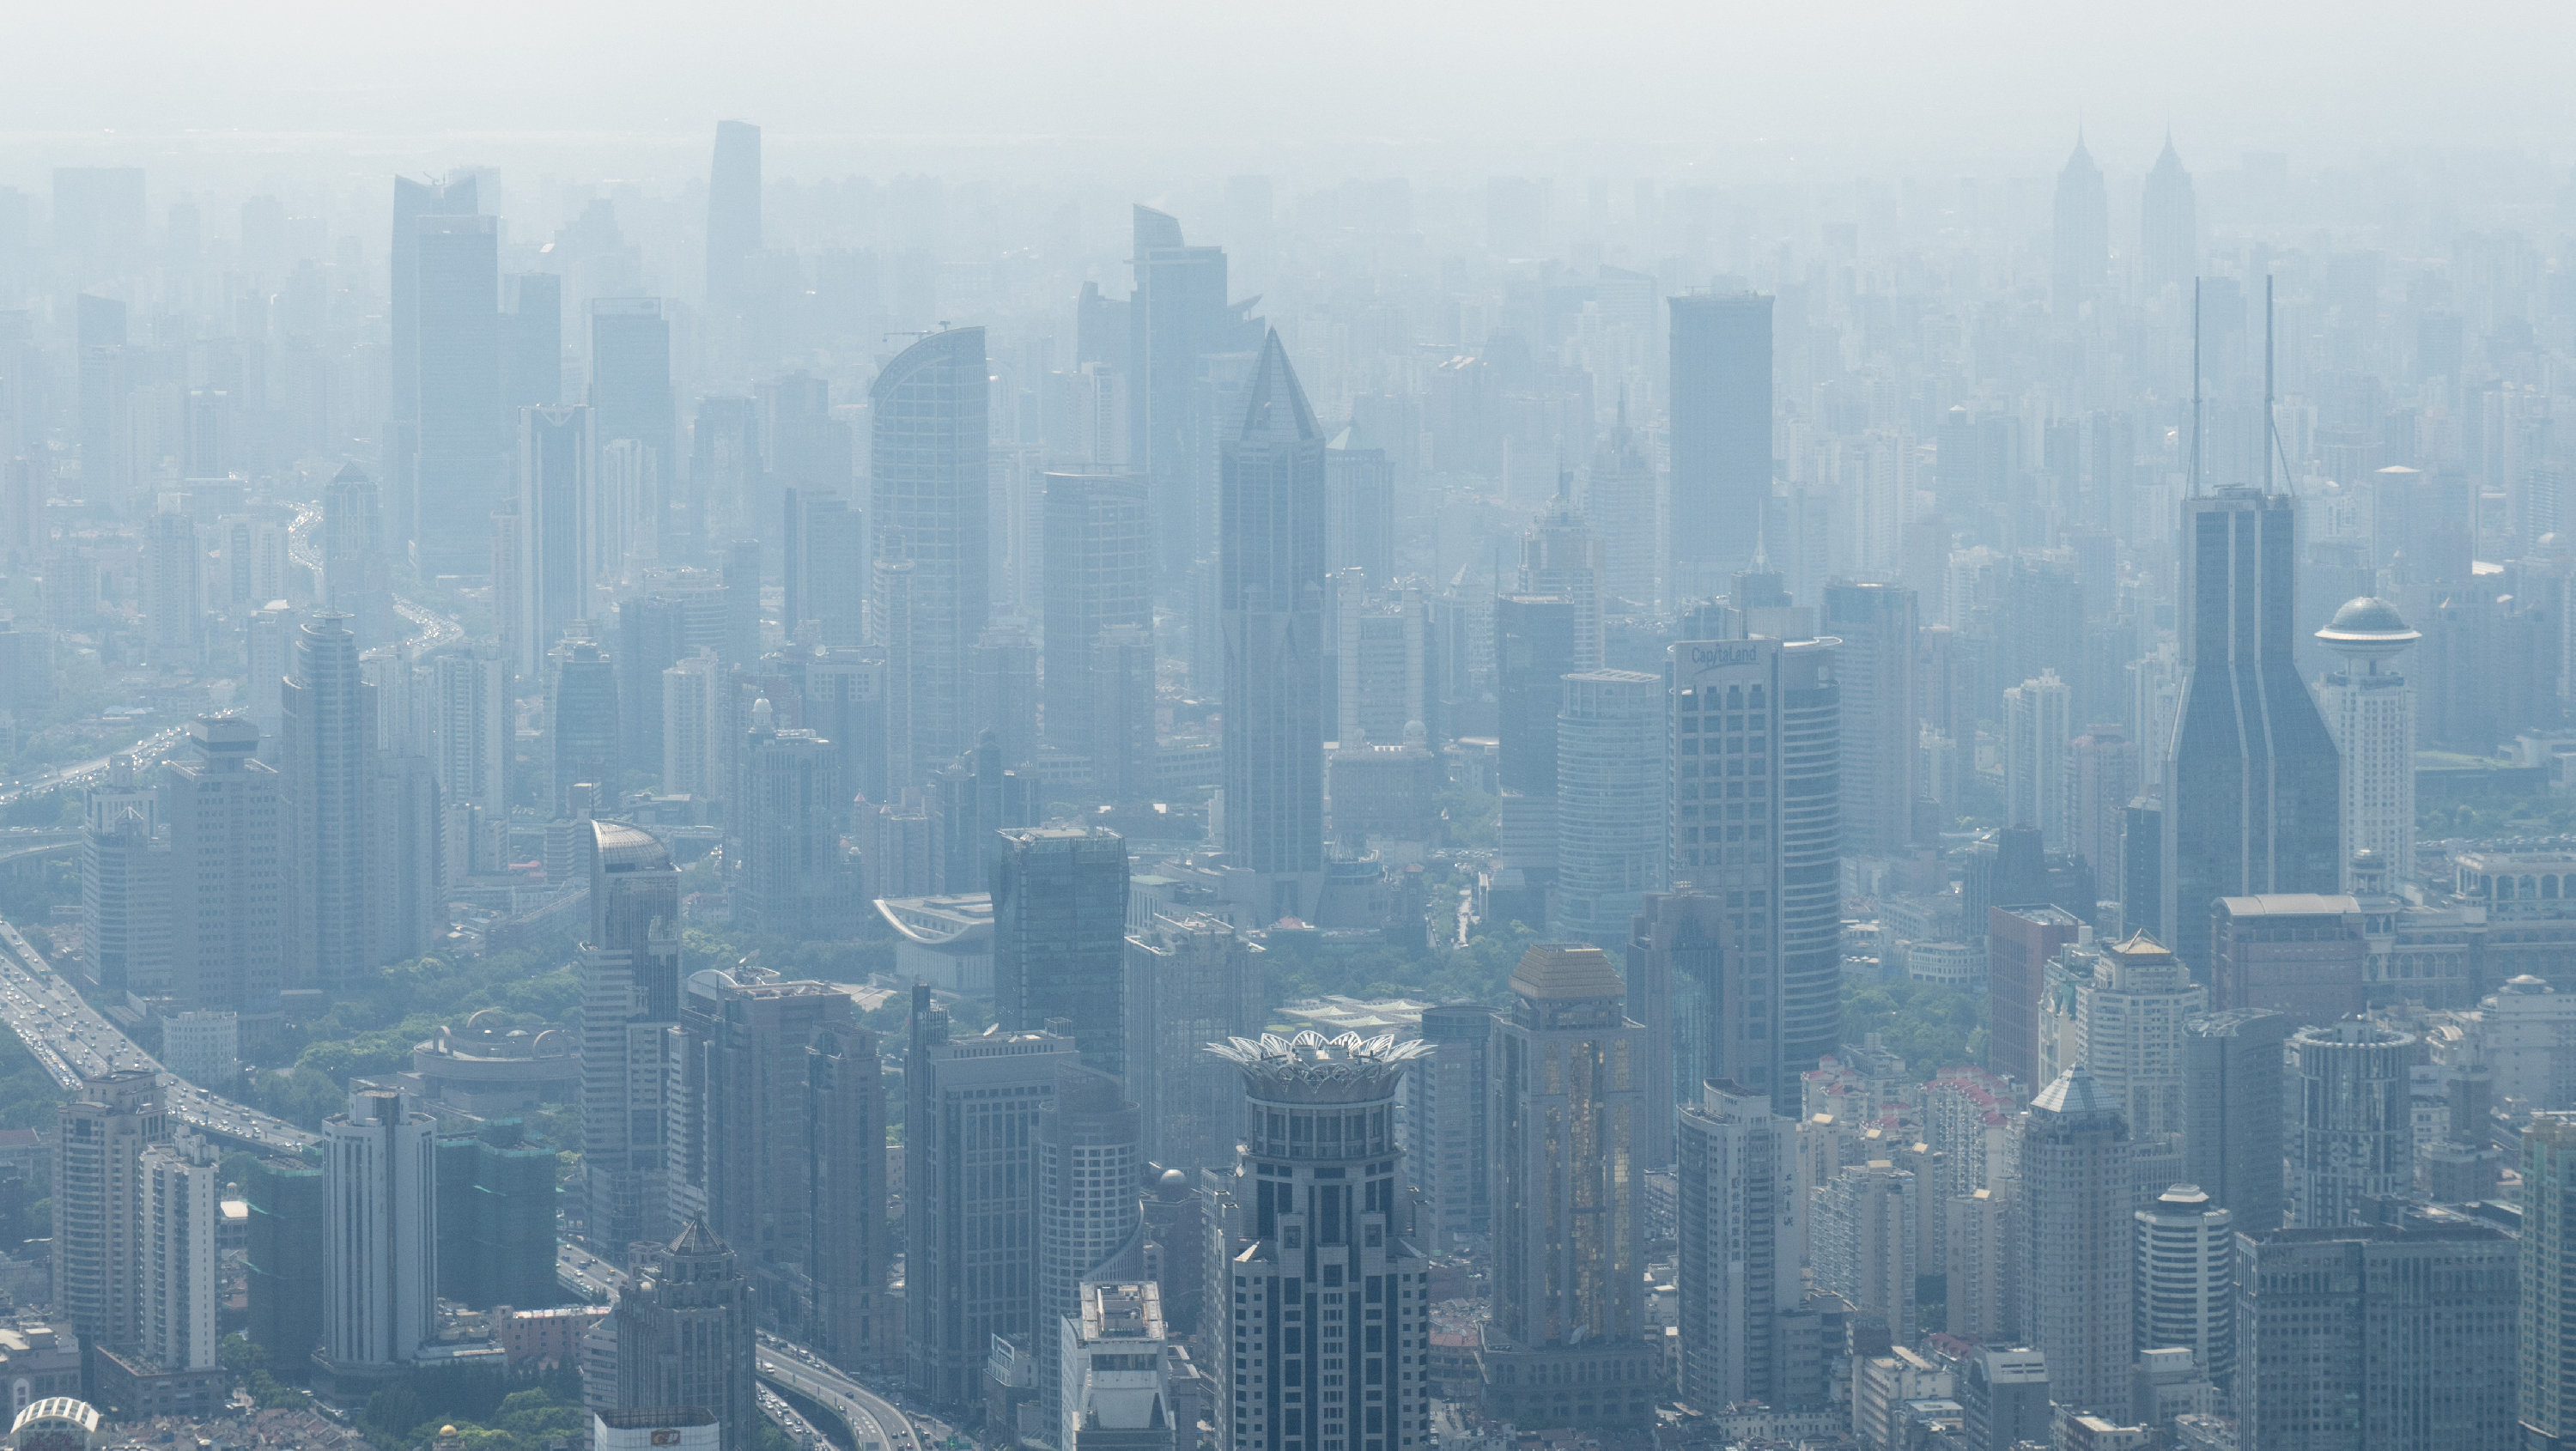 23 kínai nagyváros Tokióval és Moszkvával együtt felel a világ városi üvegházhatásúgáz-kibocsátásának több mint feléért